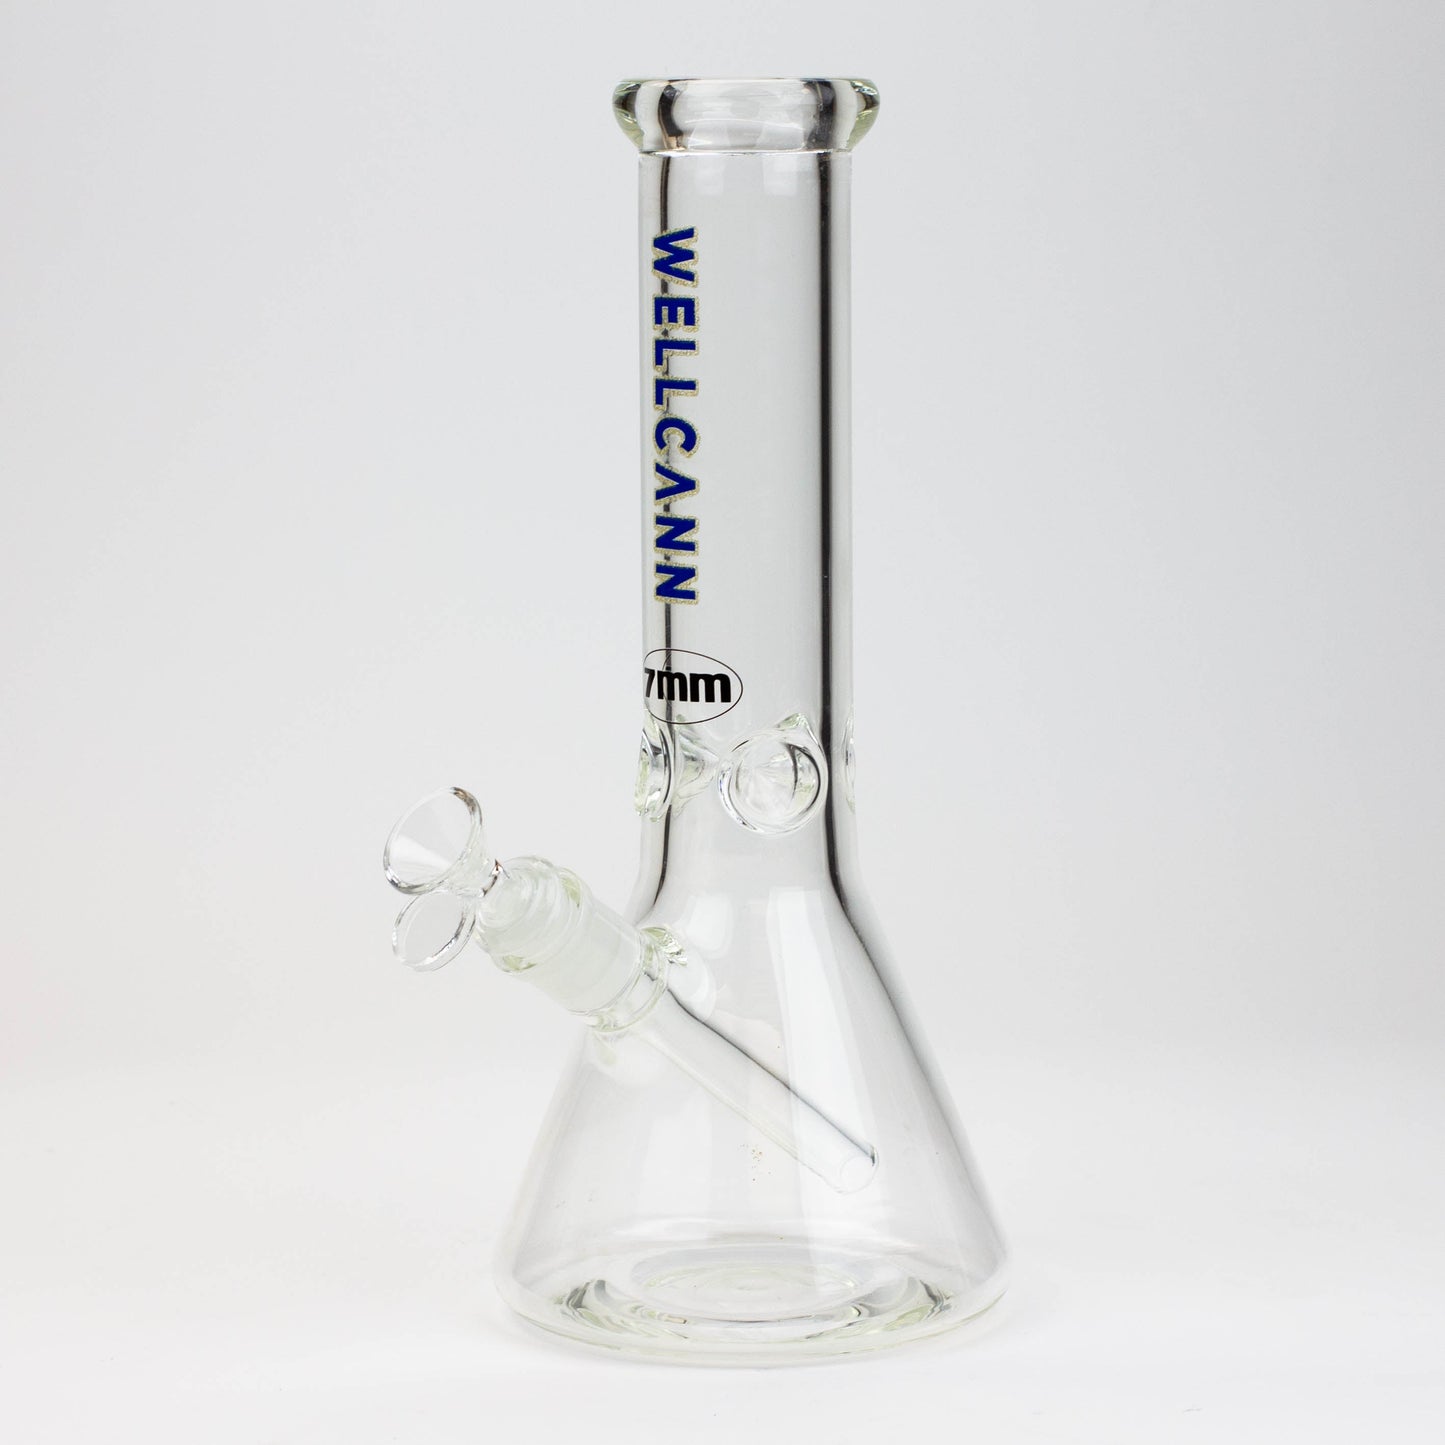 12" WellCann beaker 7 mm glass water bong_4